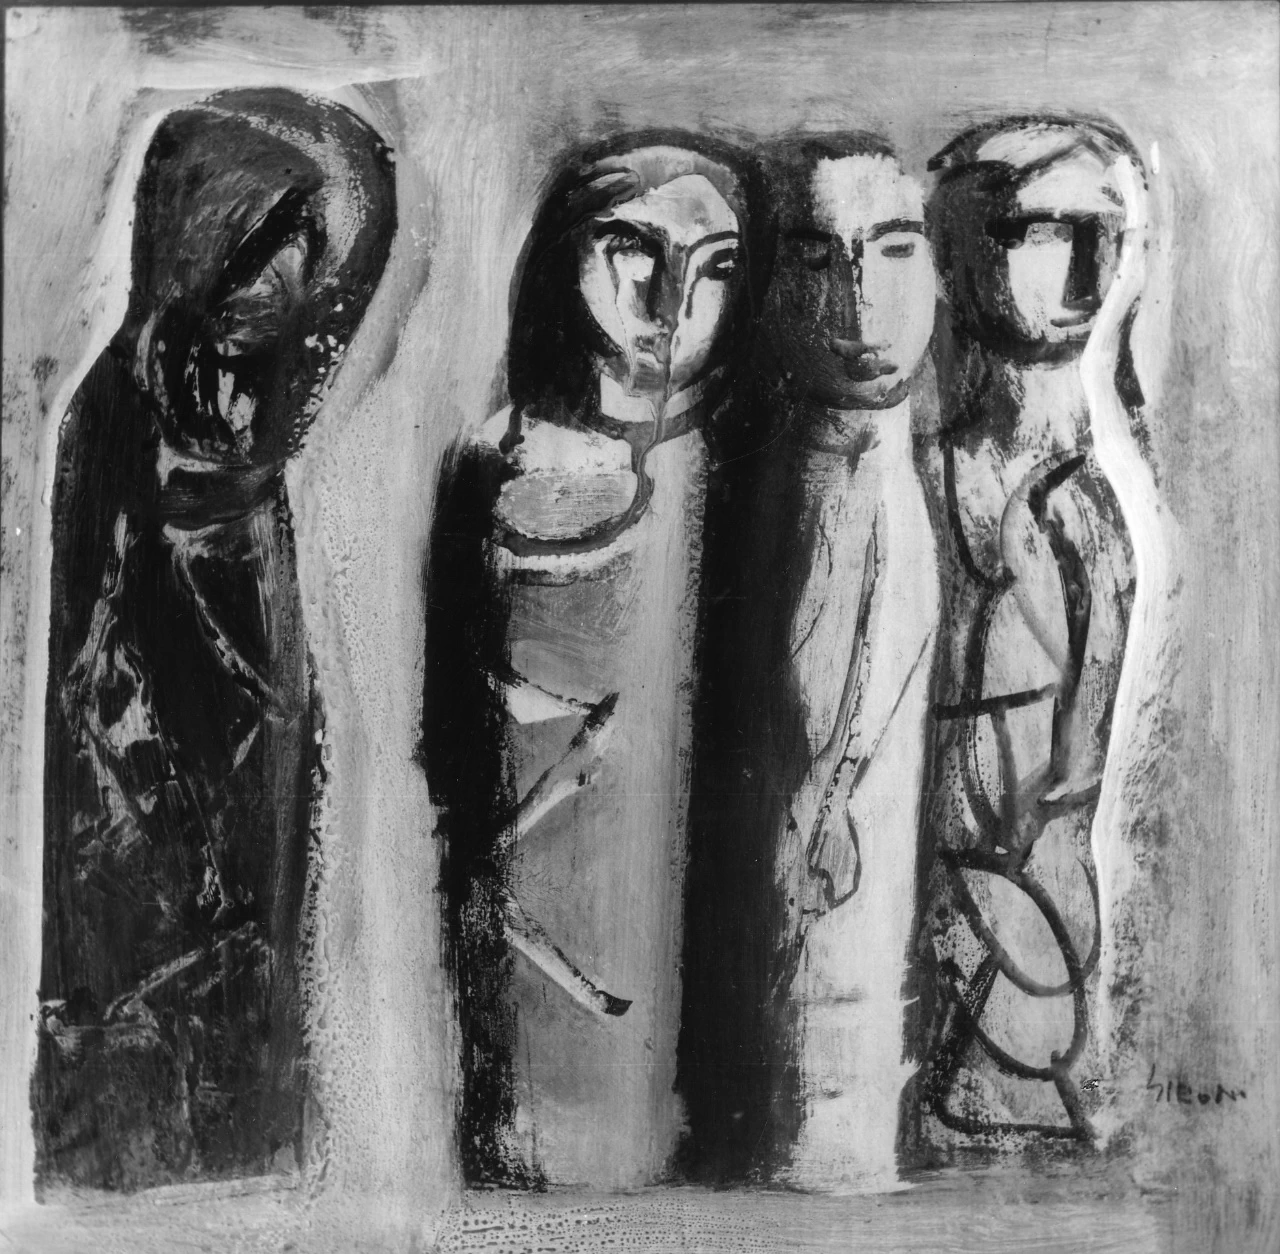  133-Le mummie-Raccolta Alberto Della Ragione-Palazzina di Belvedere 